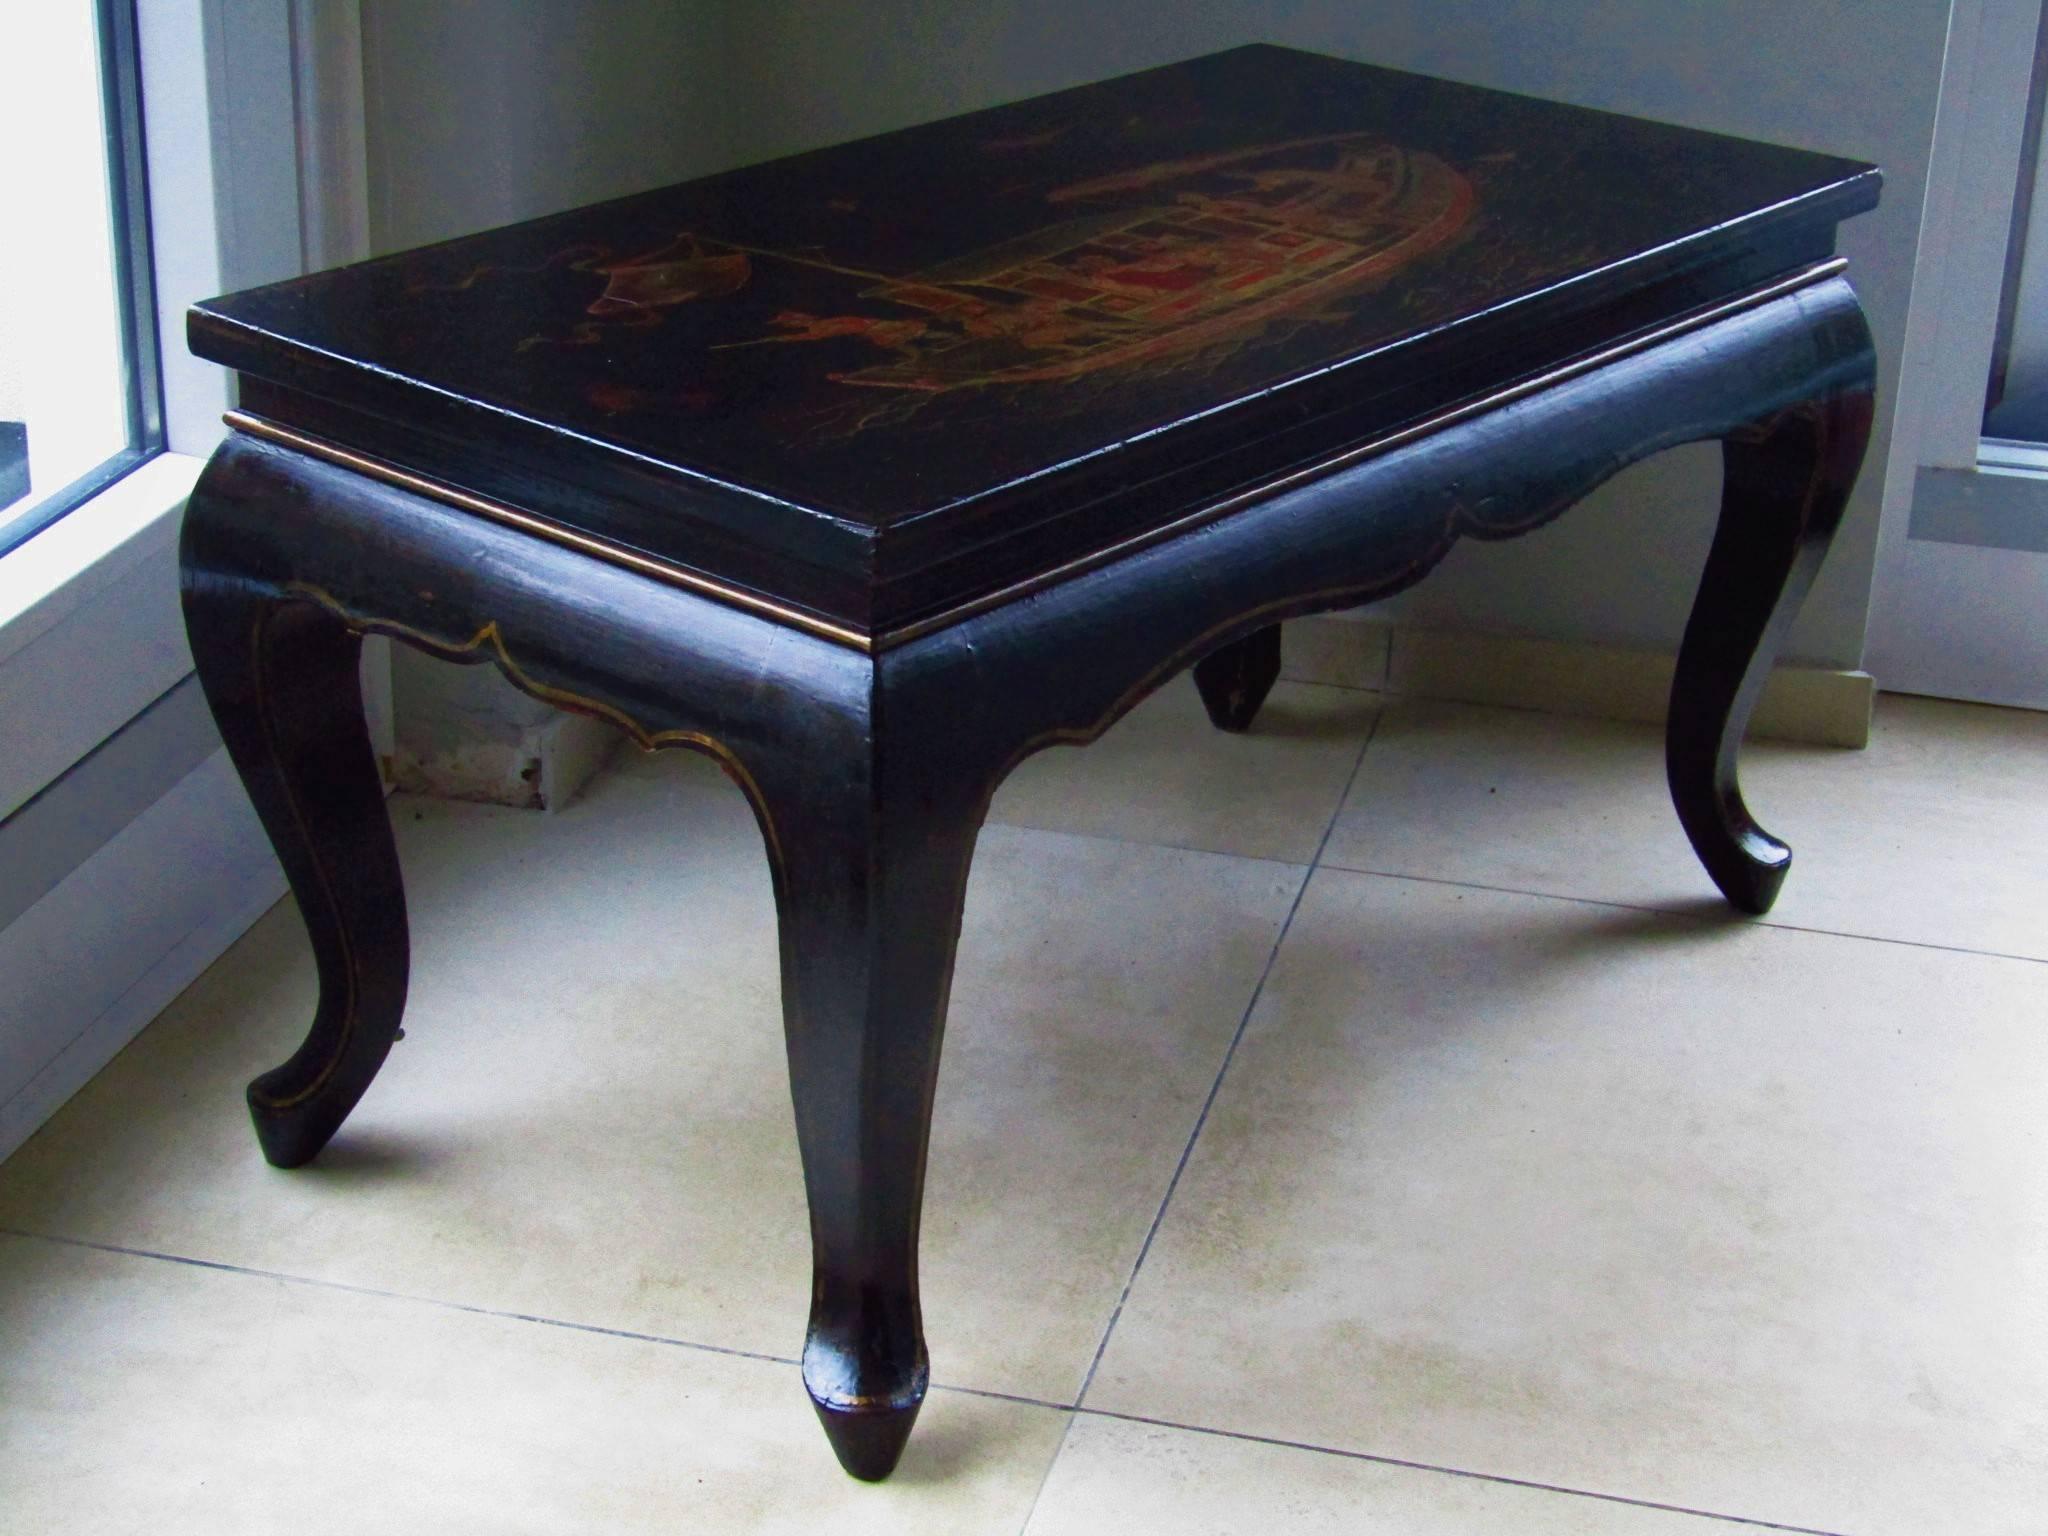 Art Deco Kaffee Opium Tisch. Handgemalter chinesischer Dekor, Frankreich, 1920er Jahre. Lack in gutem Originalzustand. Der Tisch ist solide und stabil. 

Bemerkung: Sehr schöne symmetrische All-Over-Patina des Lacks!

Wir bieten Versand von Tür